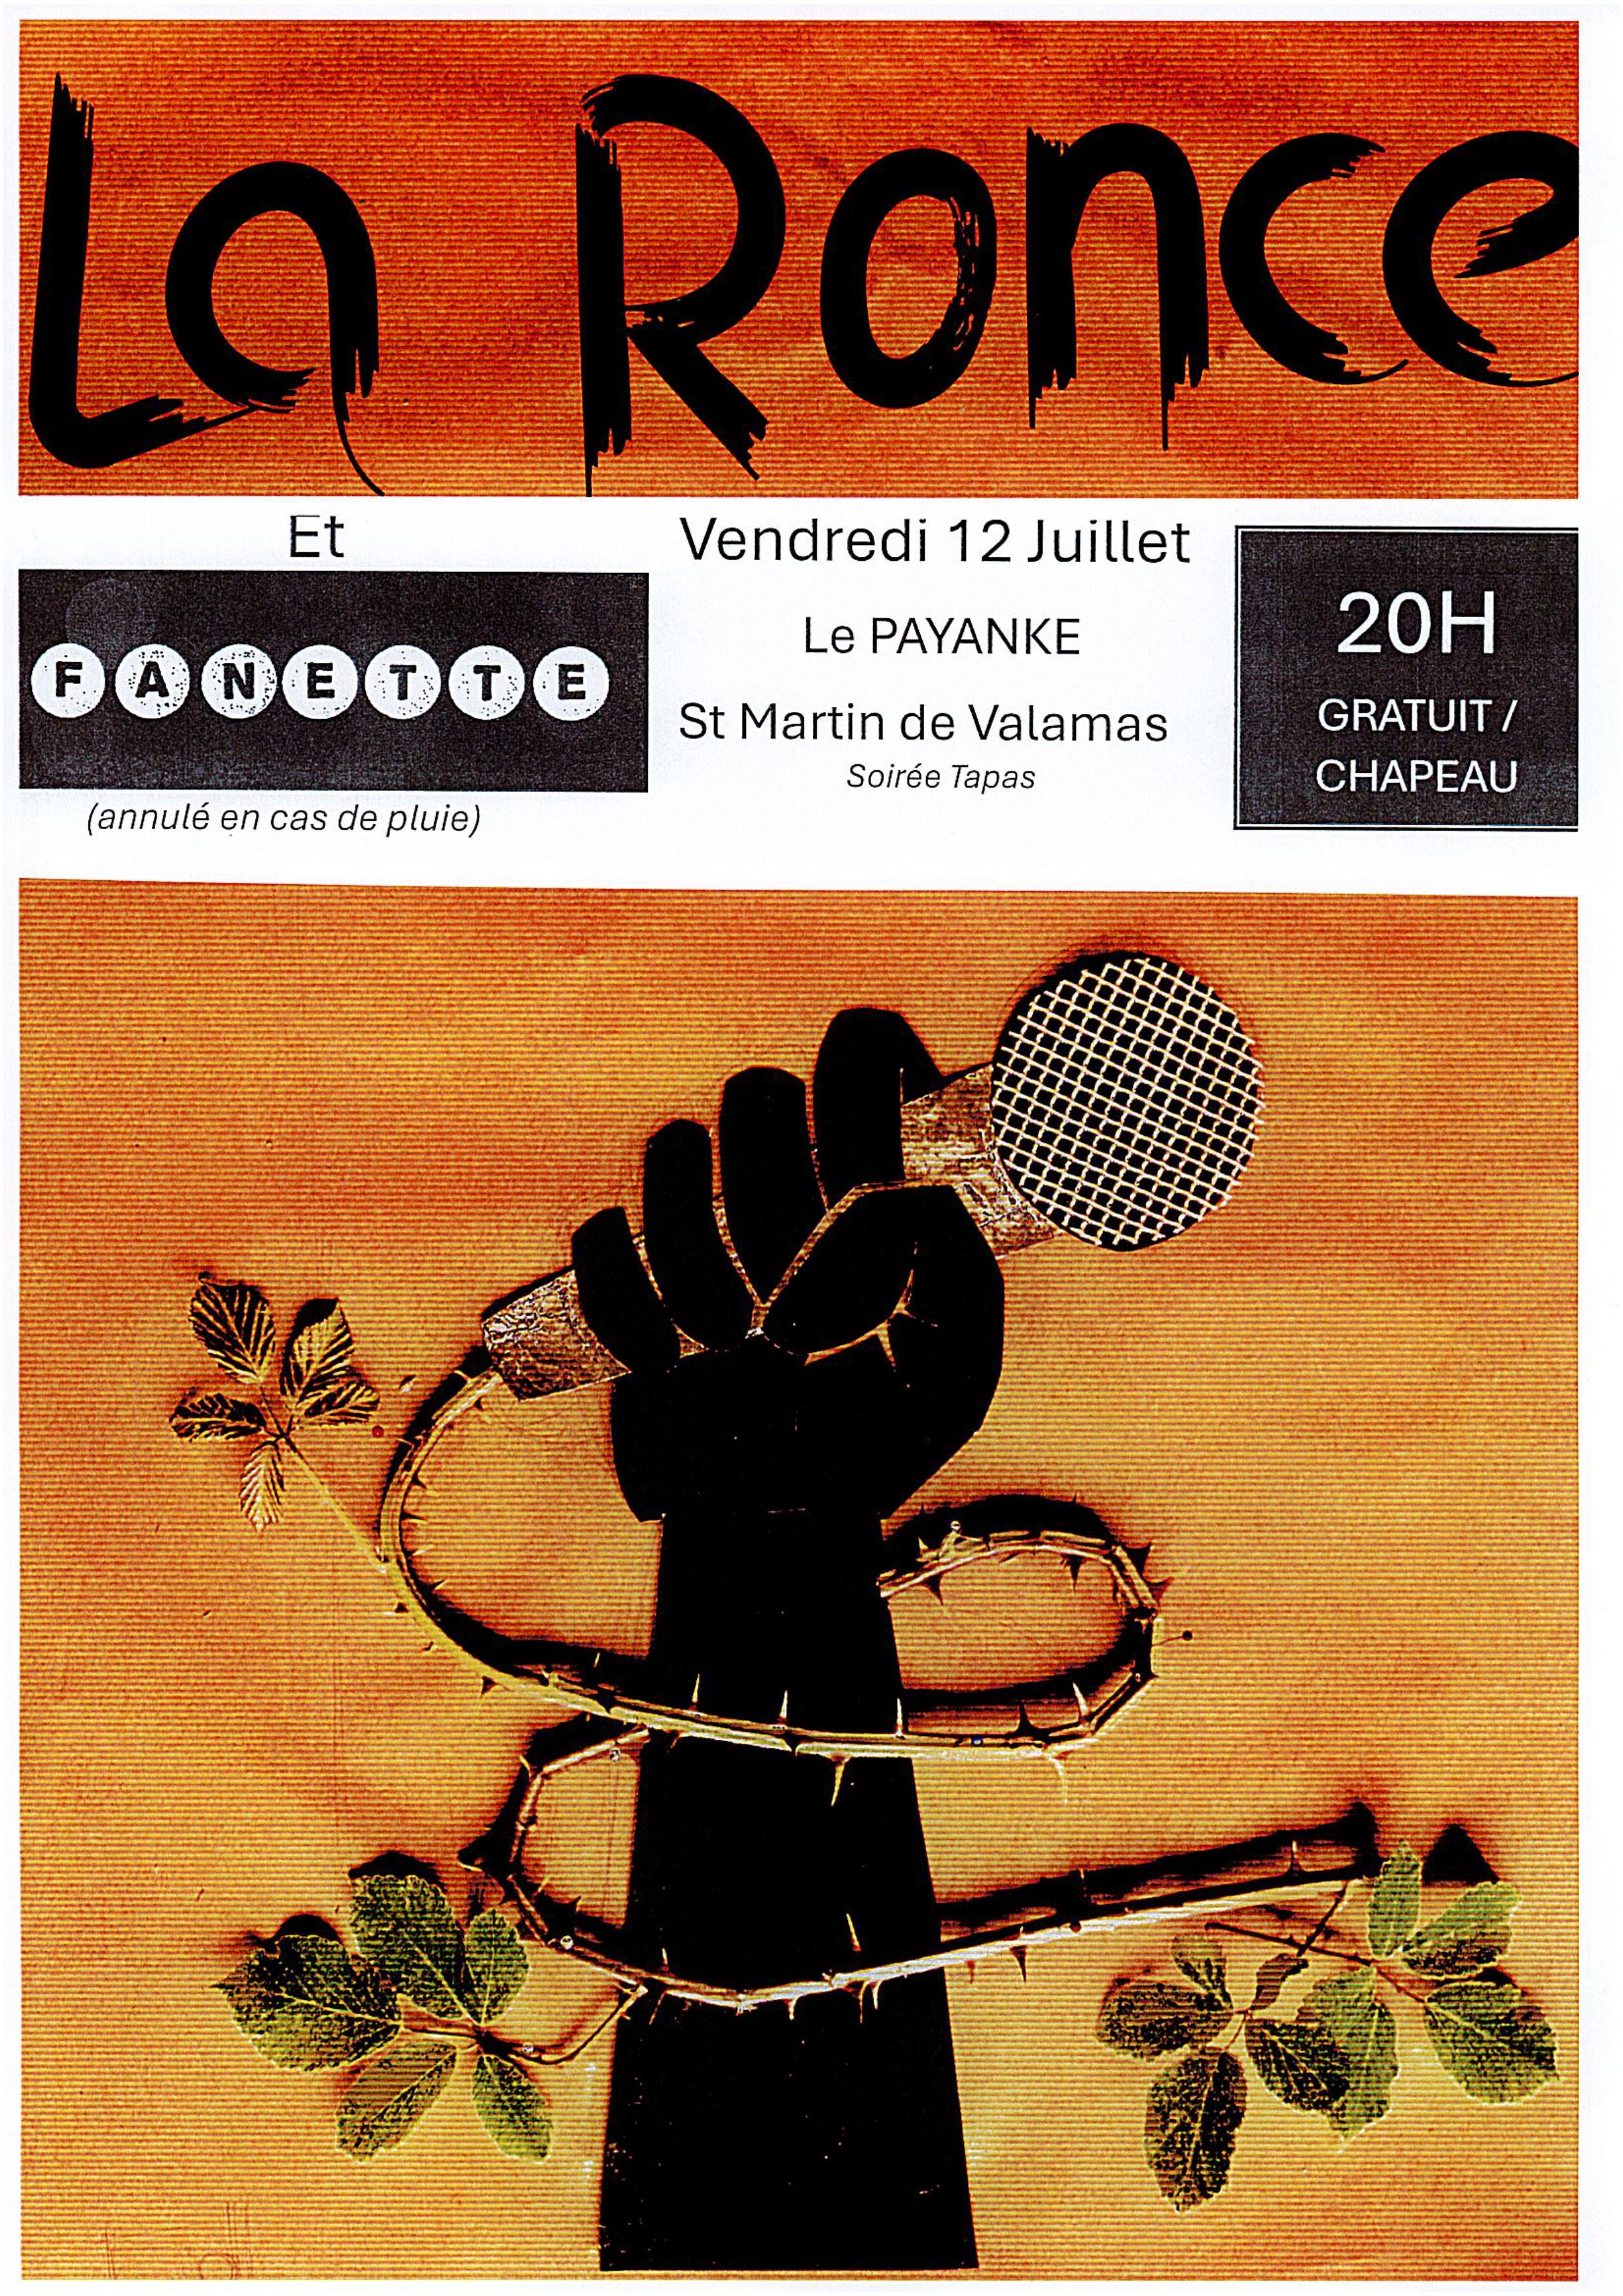 Concert La Ronce et Fanette au Payanké